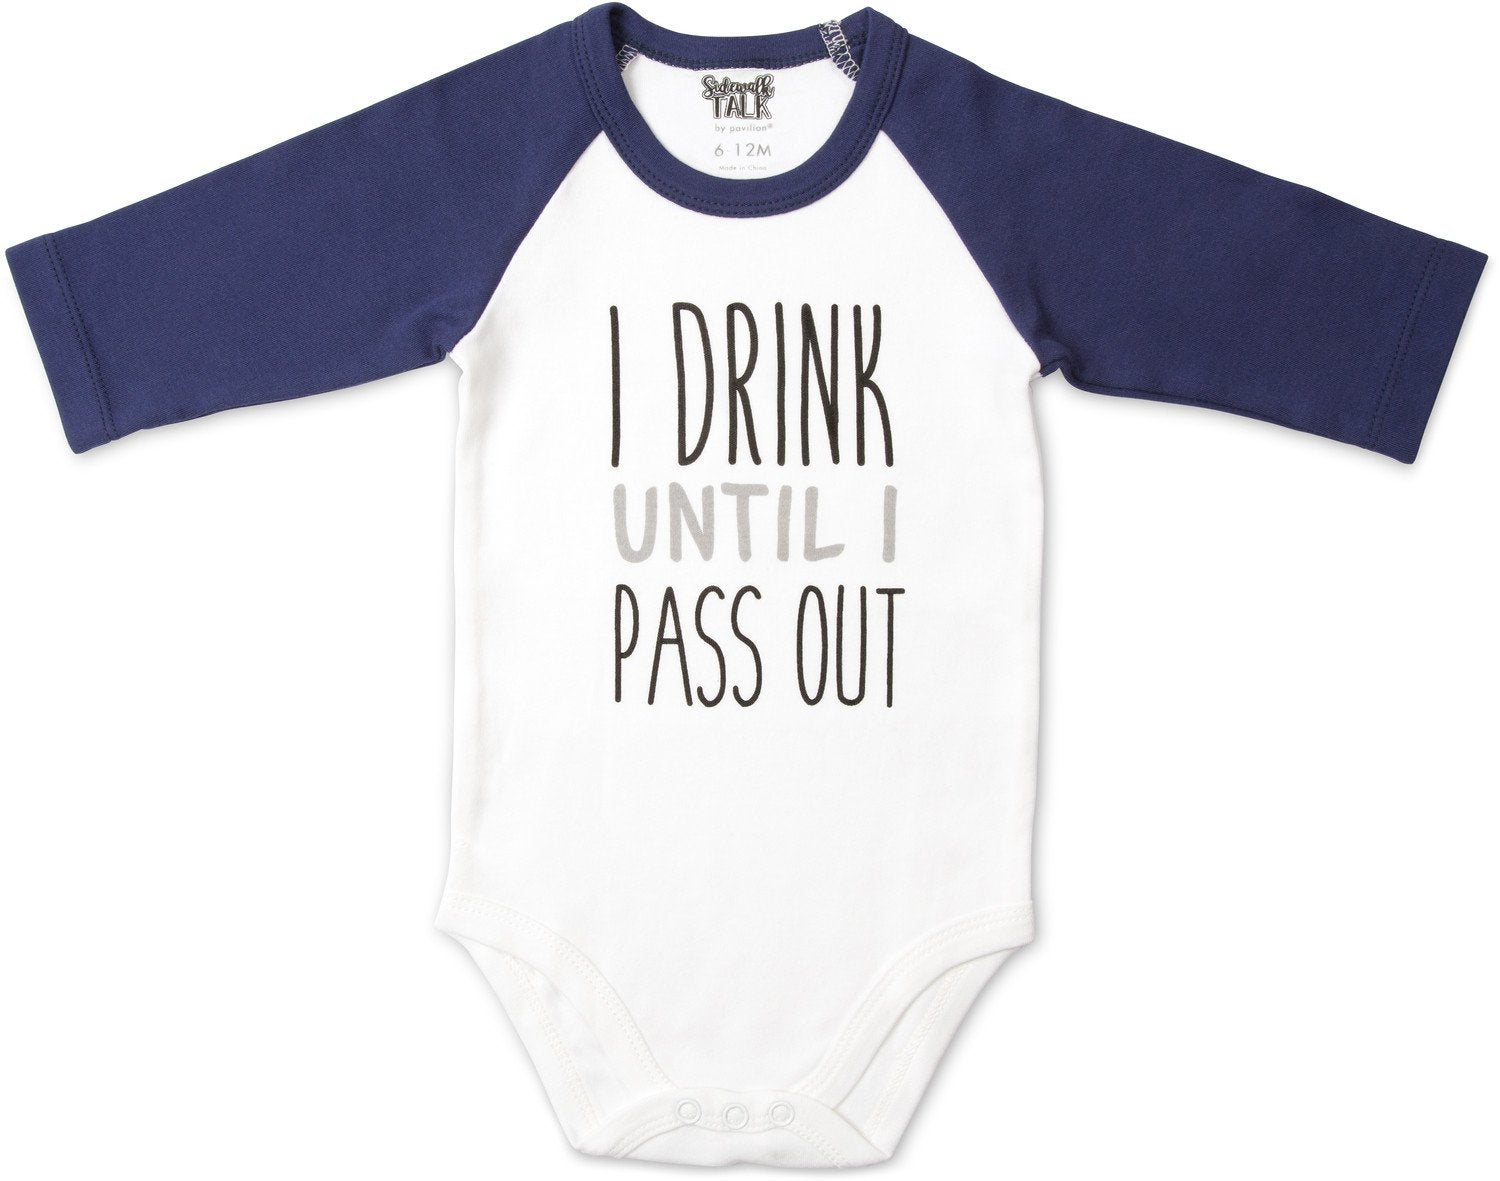 I Drink Until I Pass Out 3/4 Sleeve Baby Onesie Baby Onesie Sidewalk Talk - GigglesGear.com